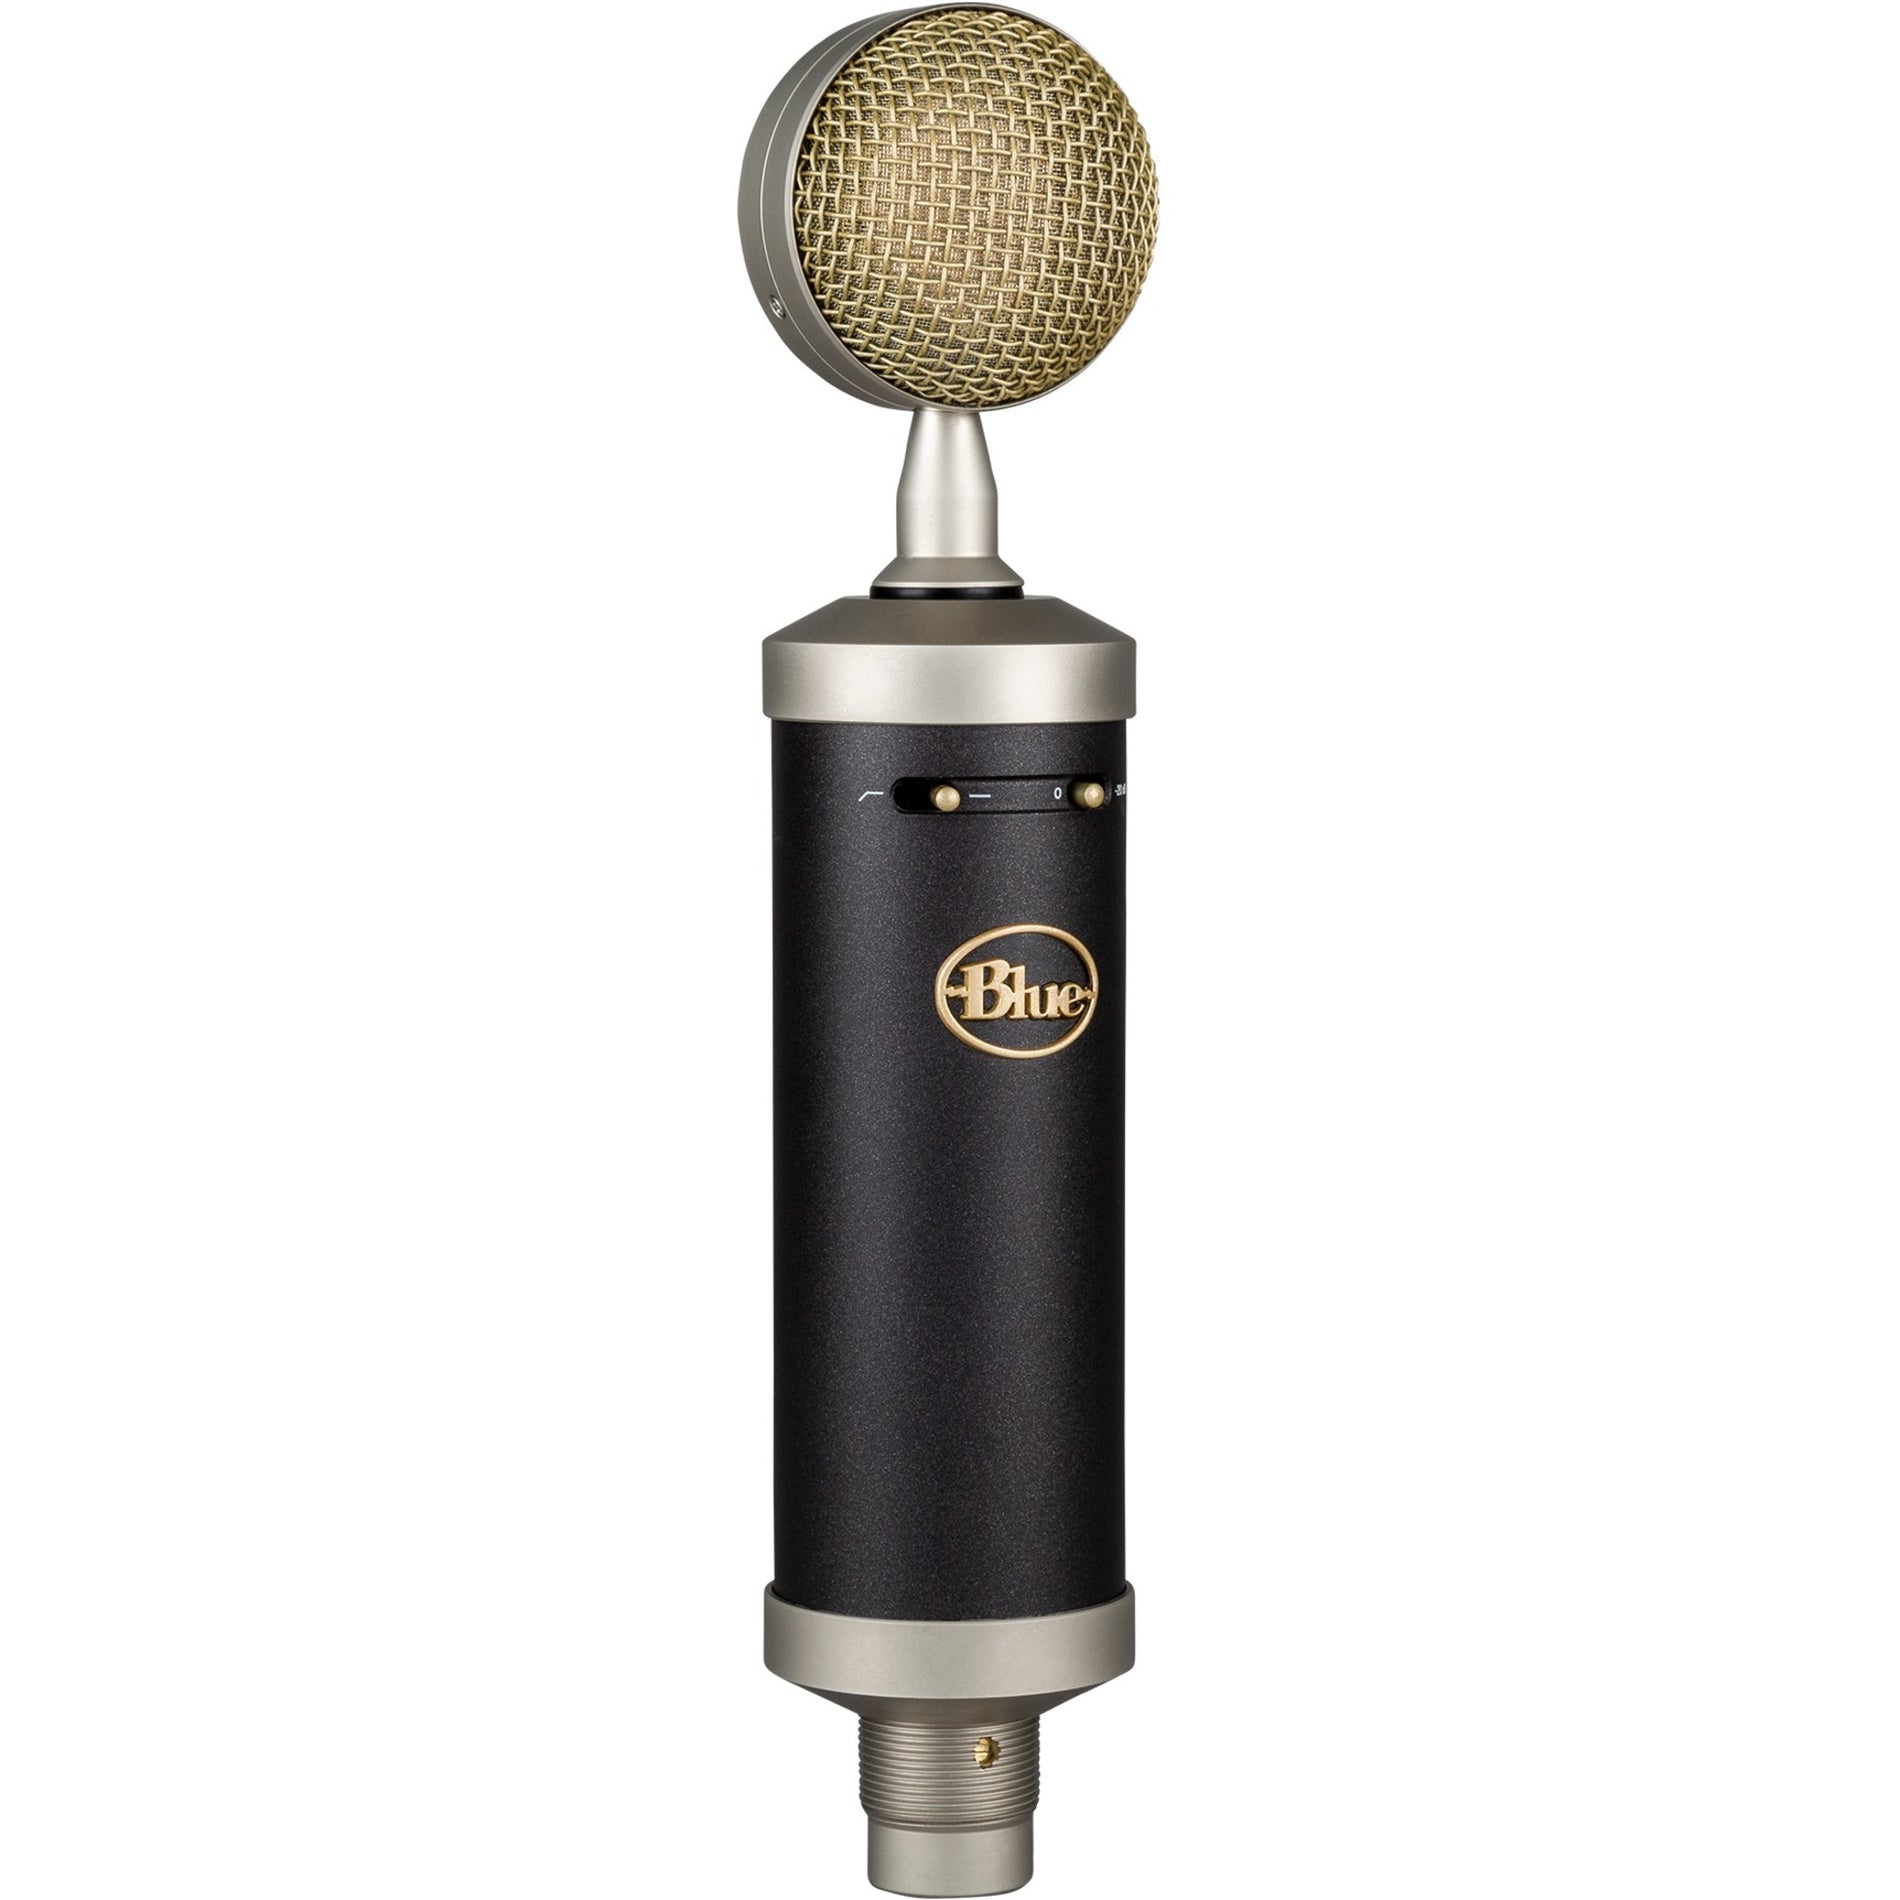 Logitech 988-000002 Baby Bottle SL Microphone, Cardioid Condenser, USB Wired, 1 Year Warranty